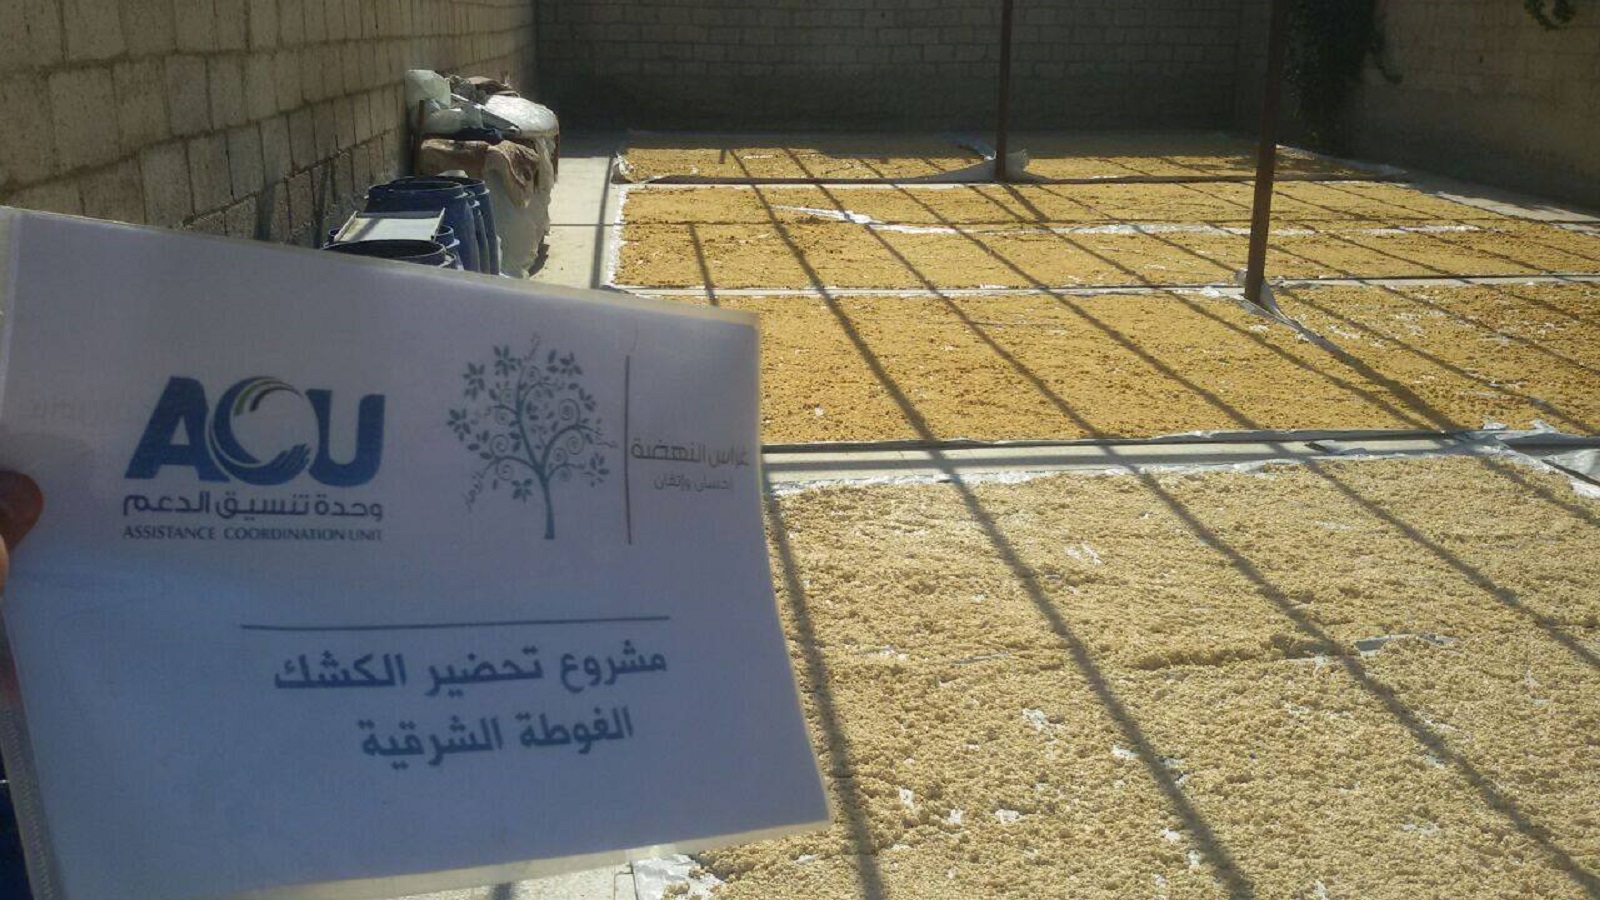 مشروع القمح الذي نفذته مؤسسة "غراس النهضة" في سوريا